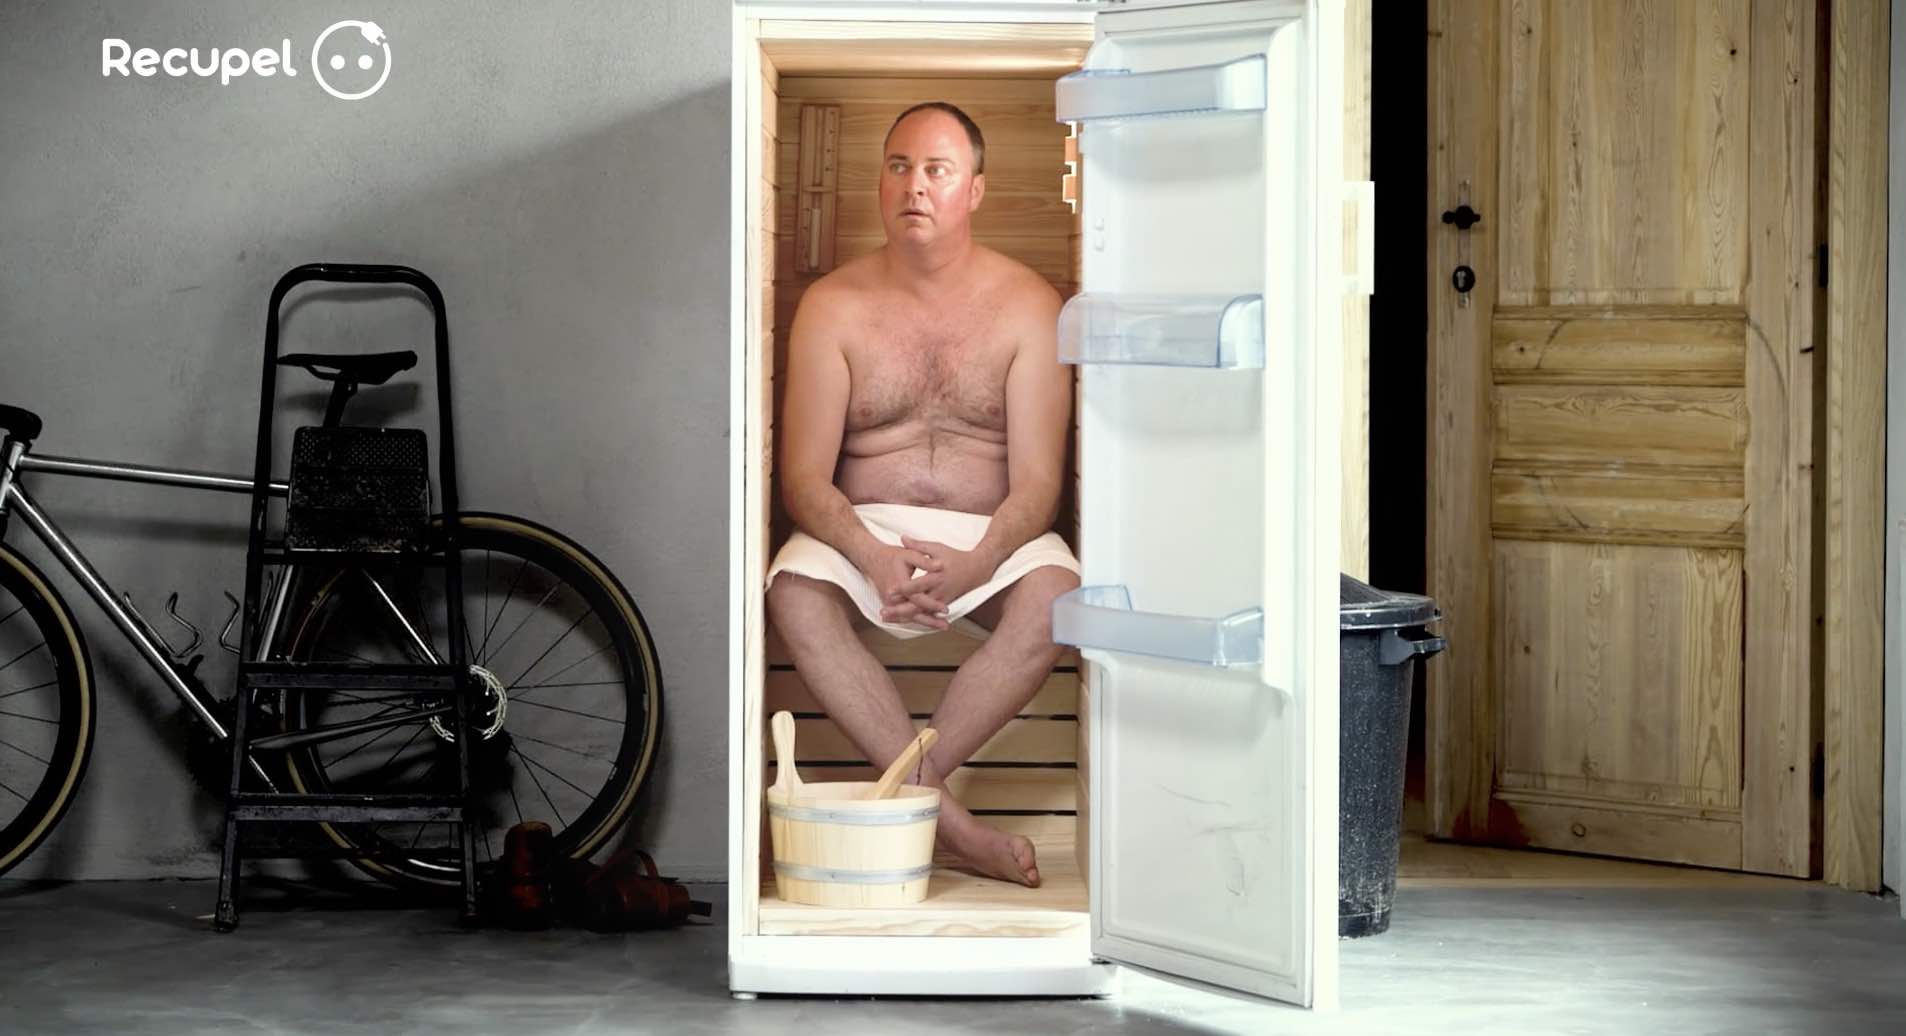 mortierbrigade invente le frigo-sauna pour Recupel